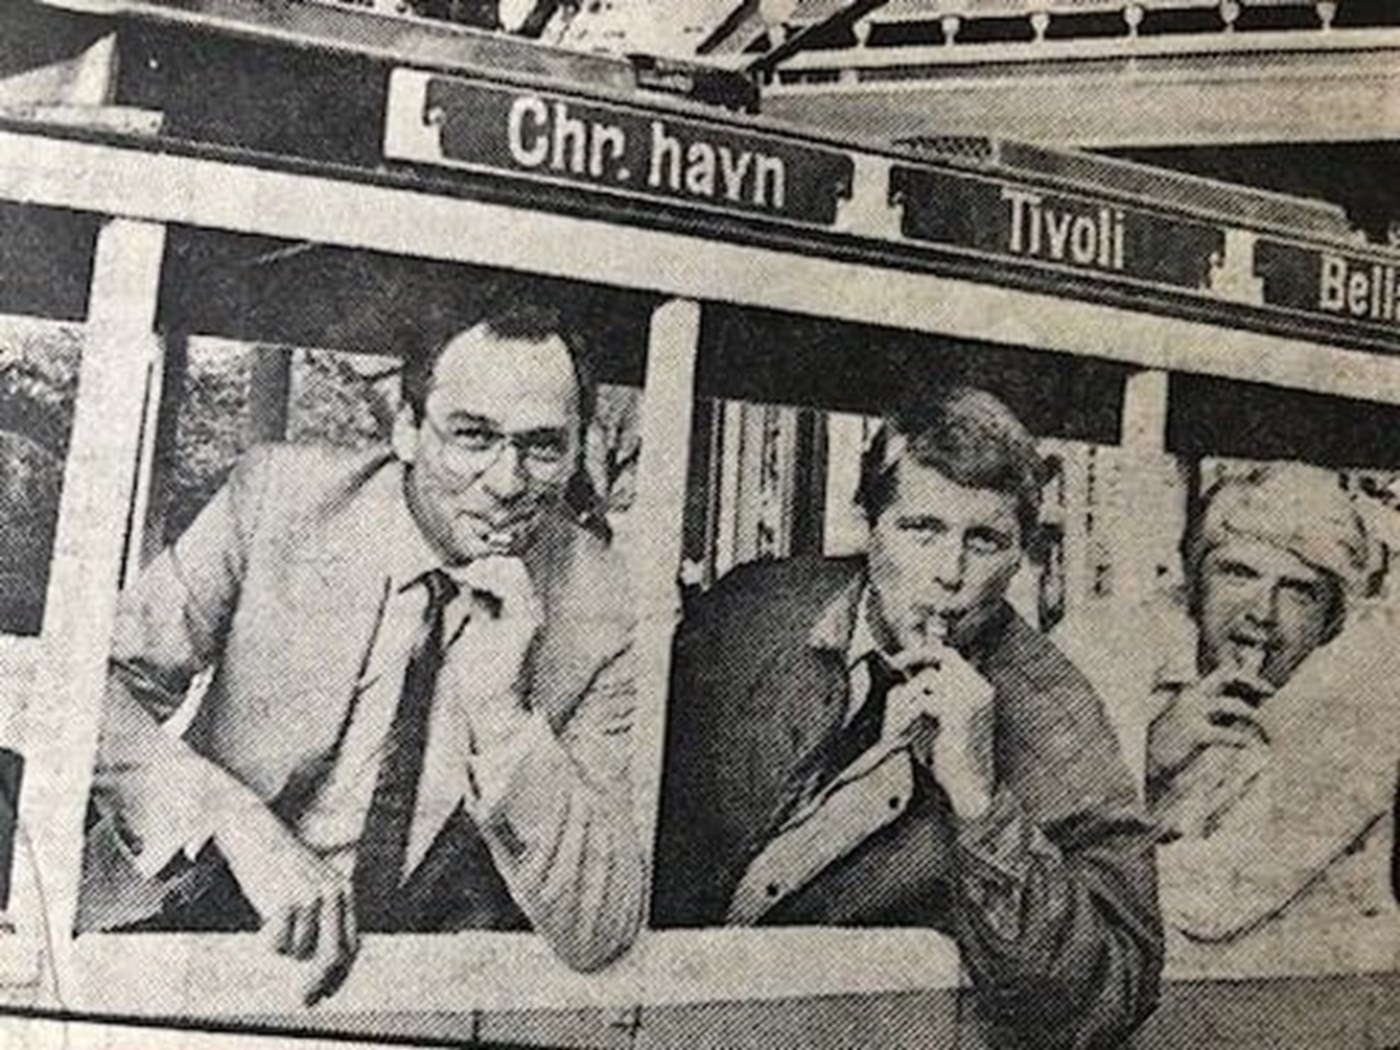 De pifter i Tivoli i 1986: Fra venstre årets ishockeydommer Søren Simonsen og håndbolddommerne Per Godsk Jørgensen og Ole Christensen.